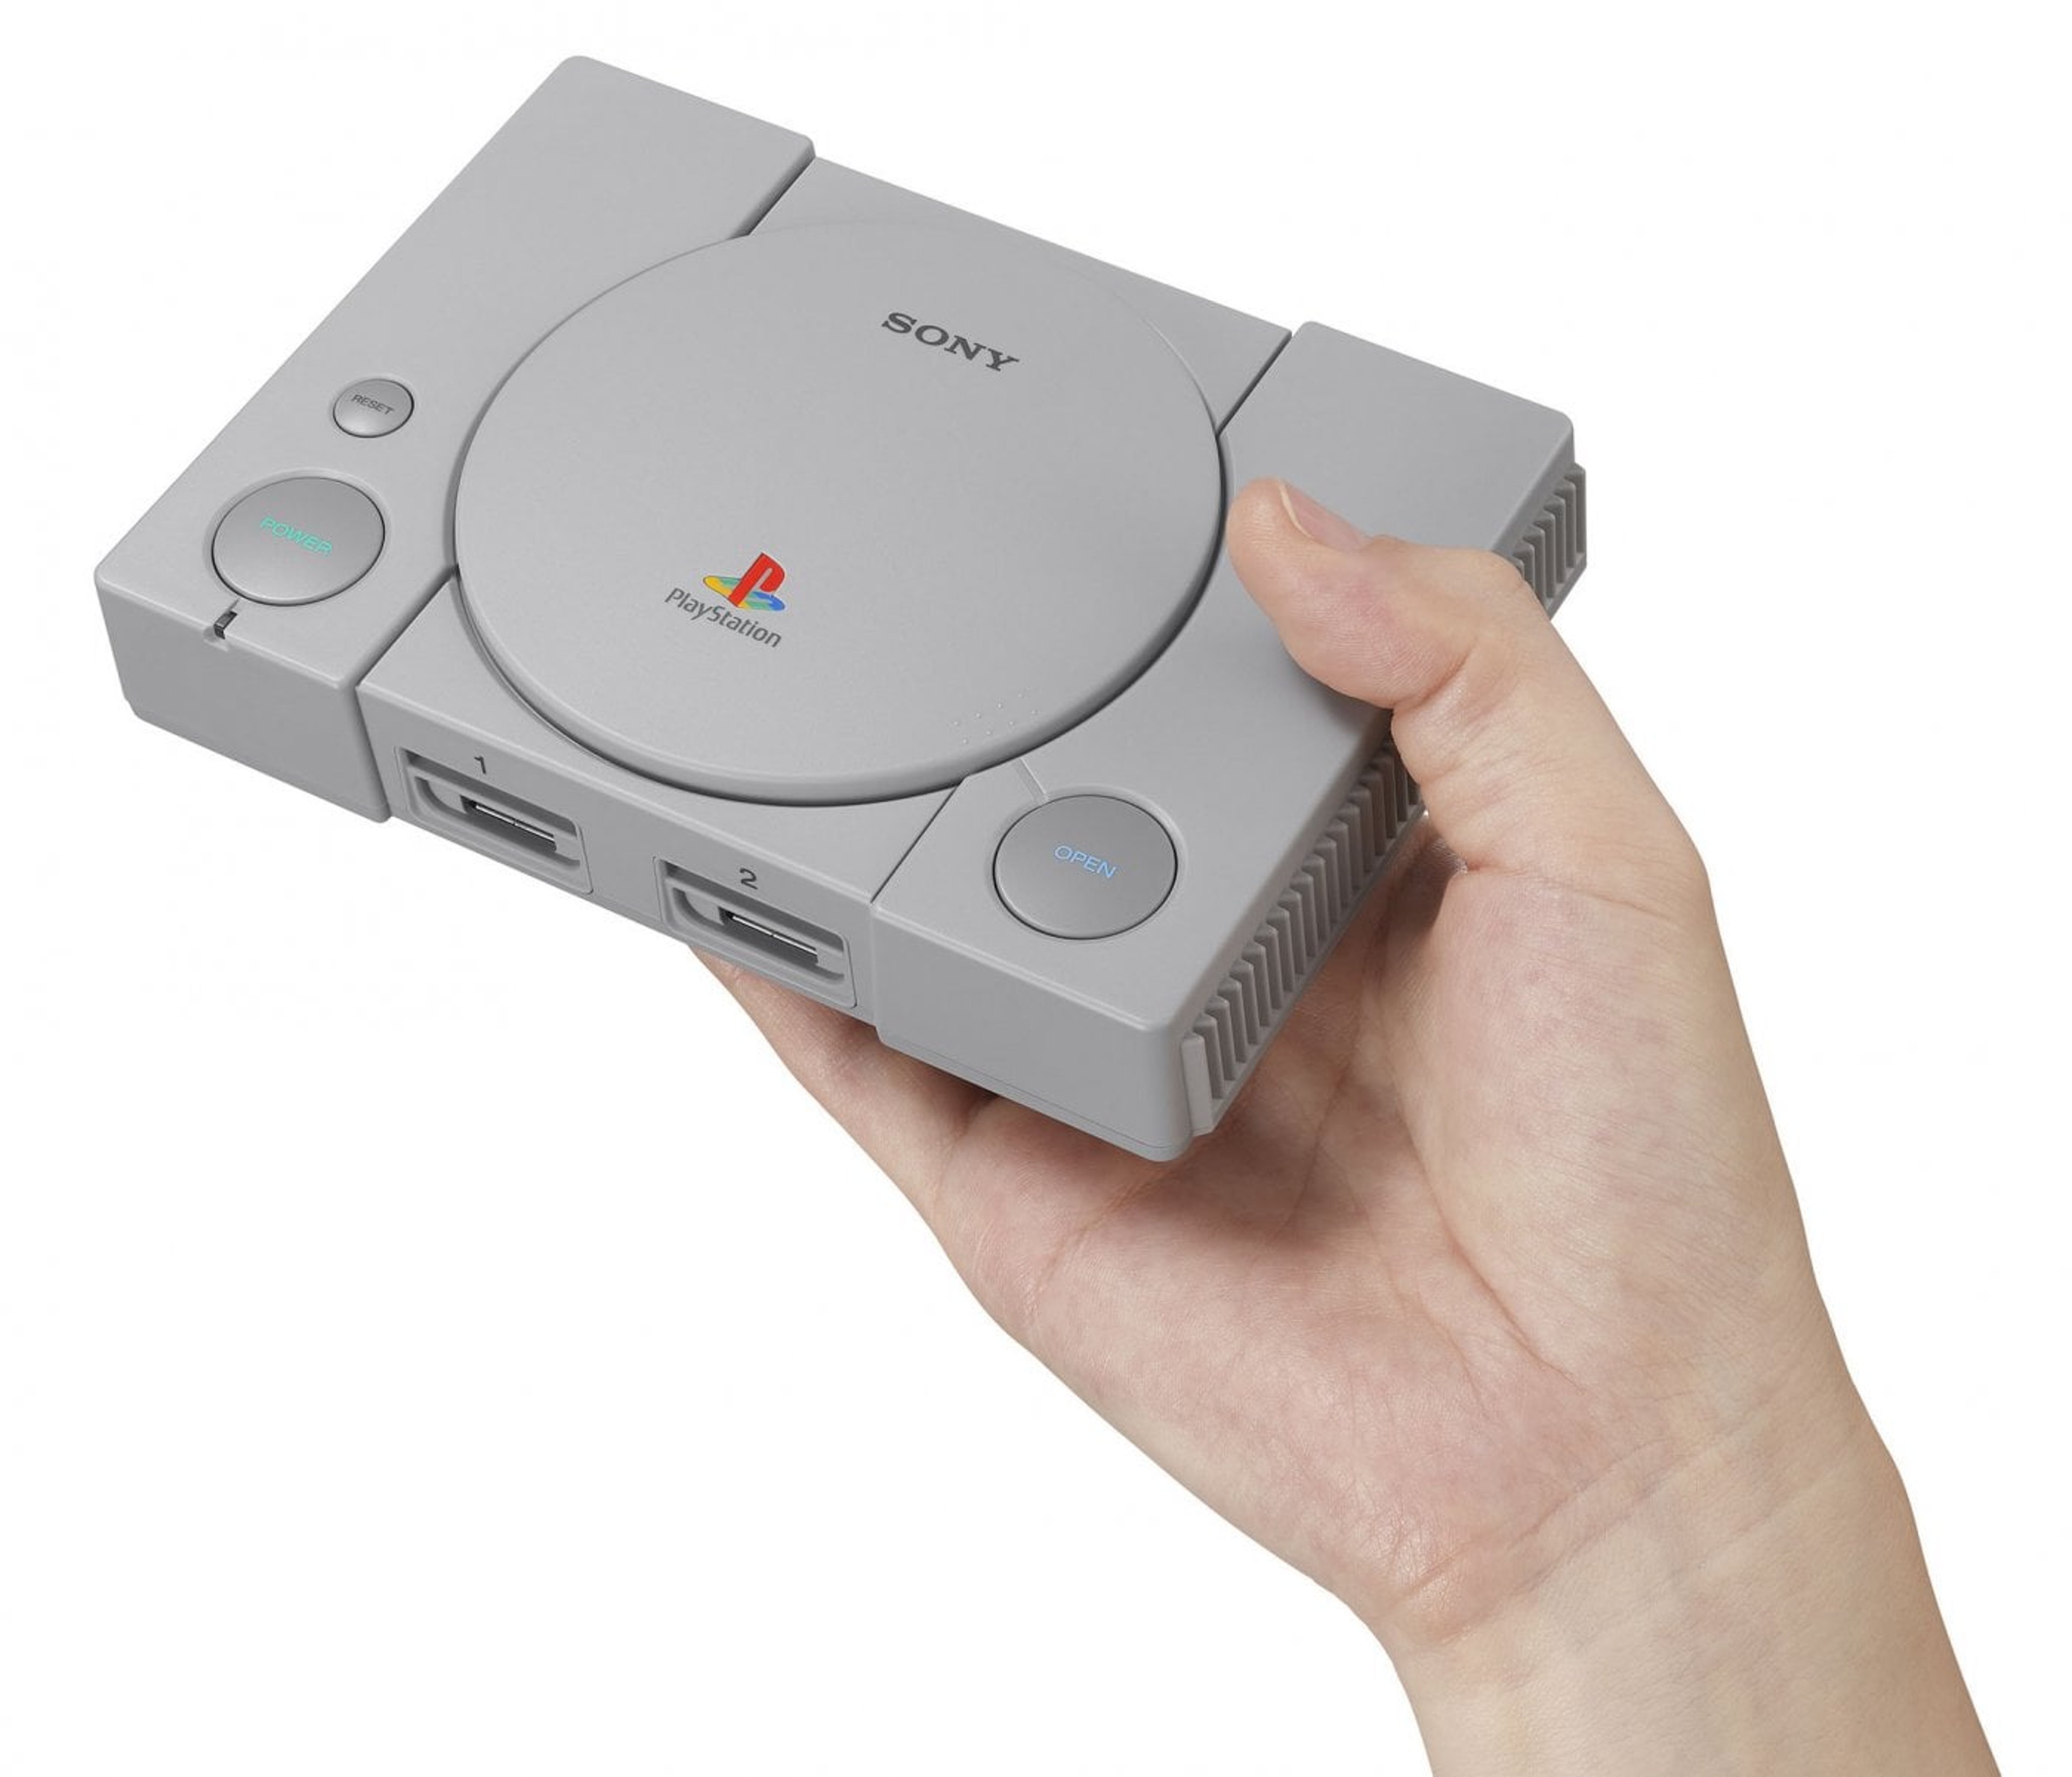 Sony riporta alla luce la sua prima console; Playstation Classic in uscita il 3 dicembre 2018. Cover